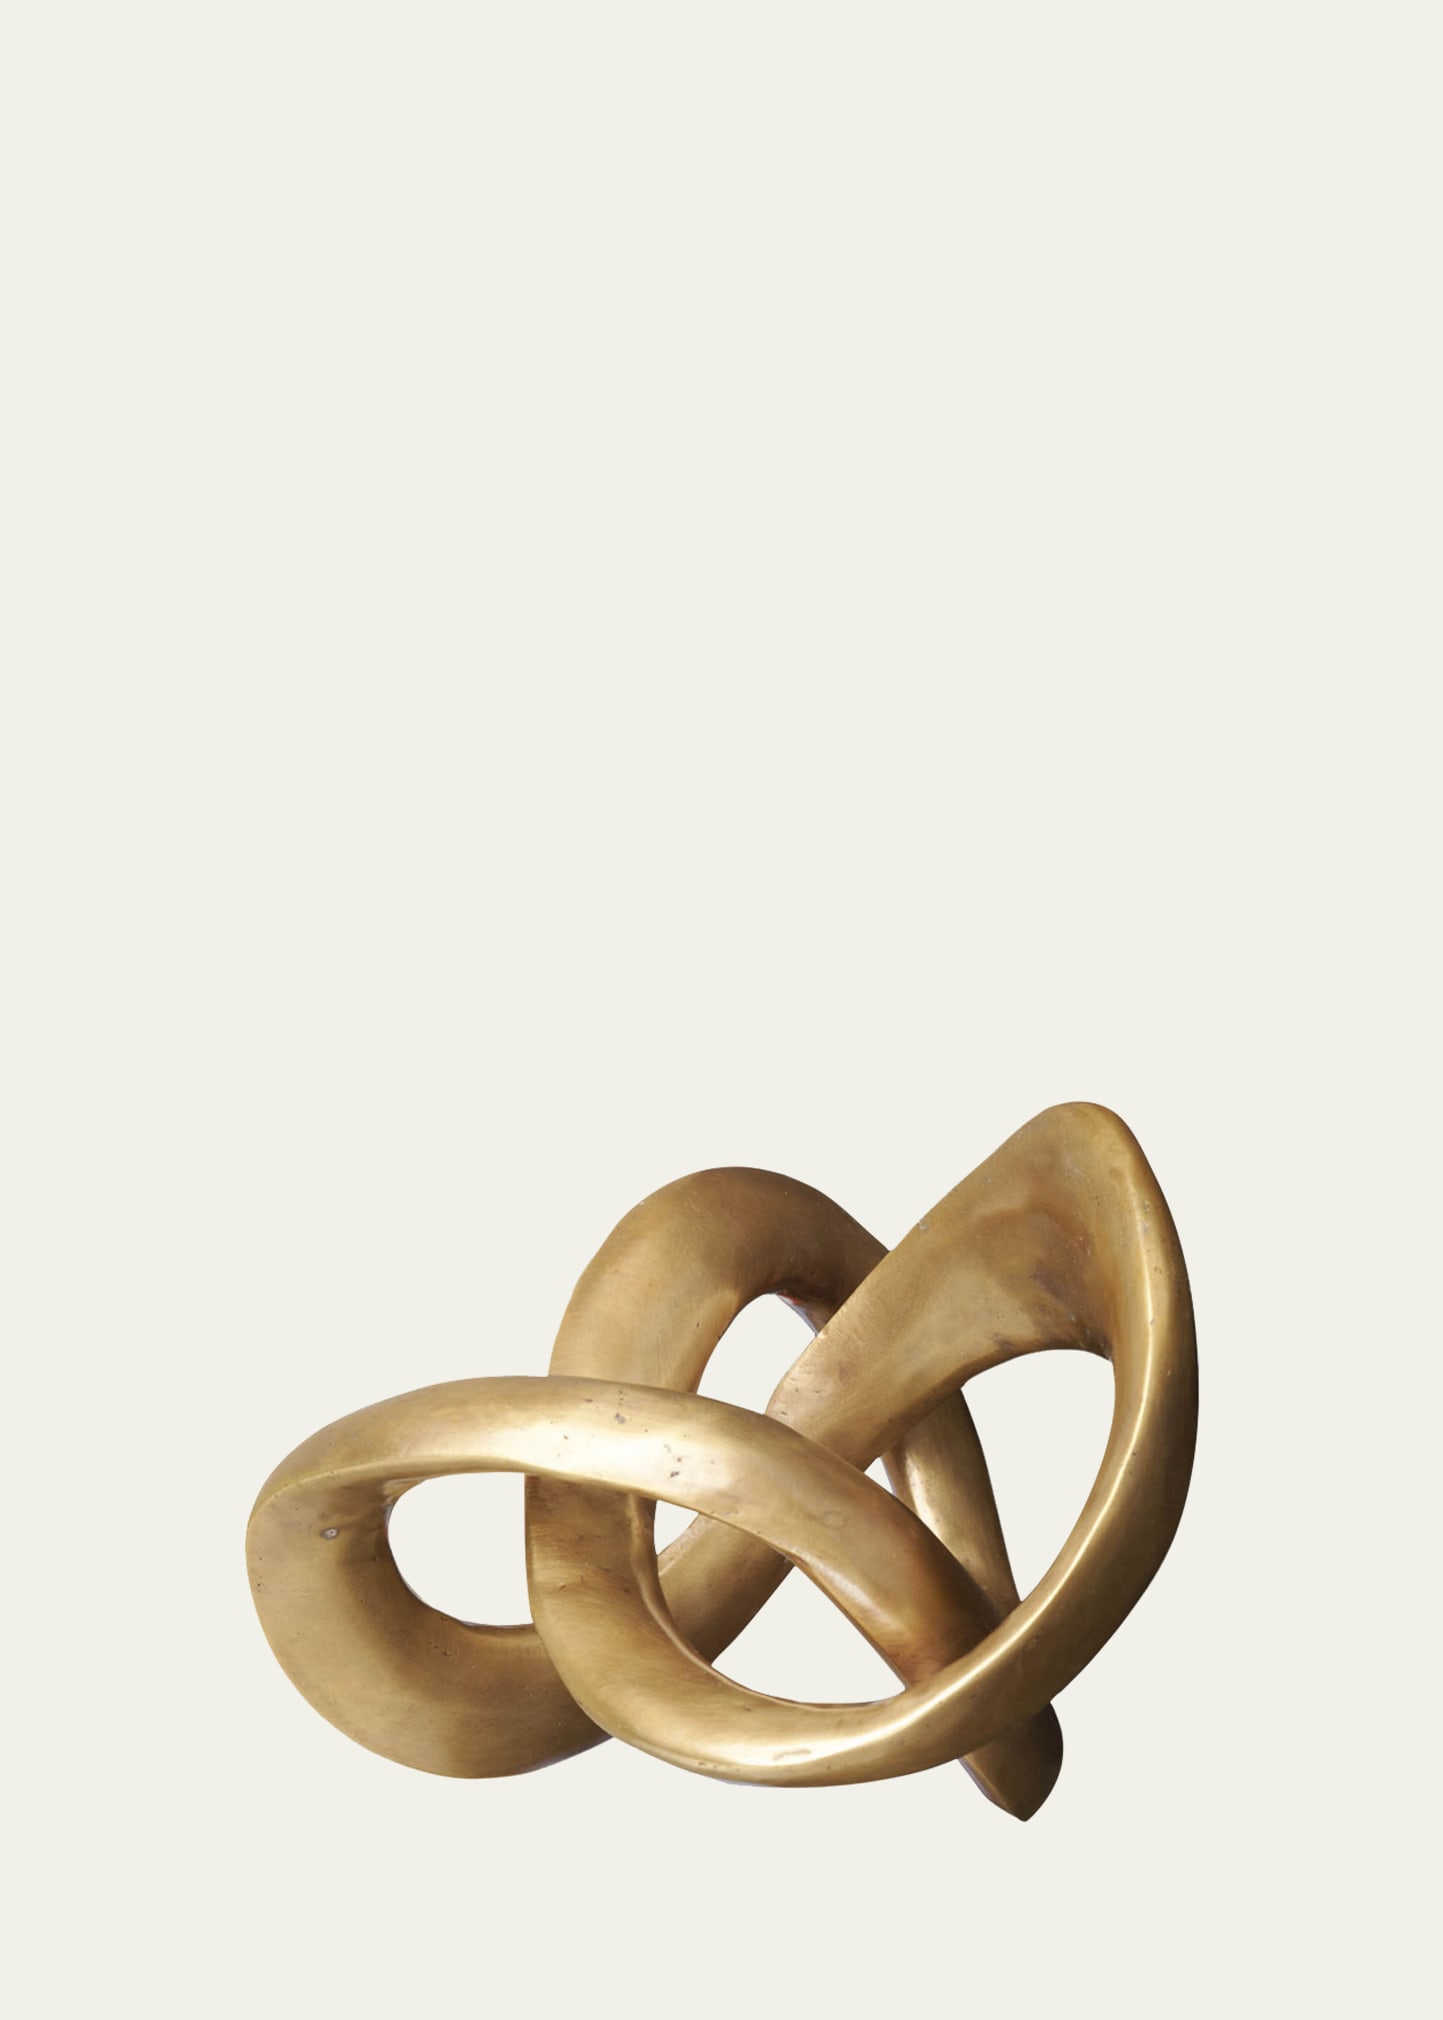 Trefoil Knot Sculpture